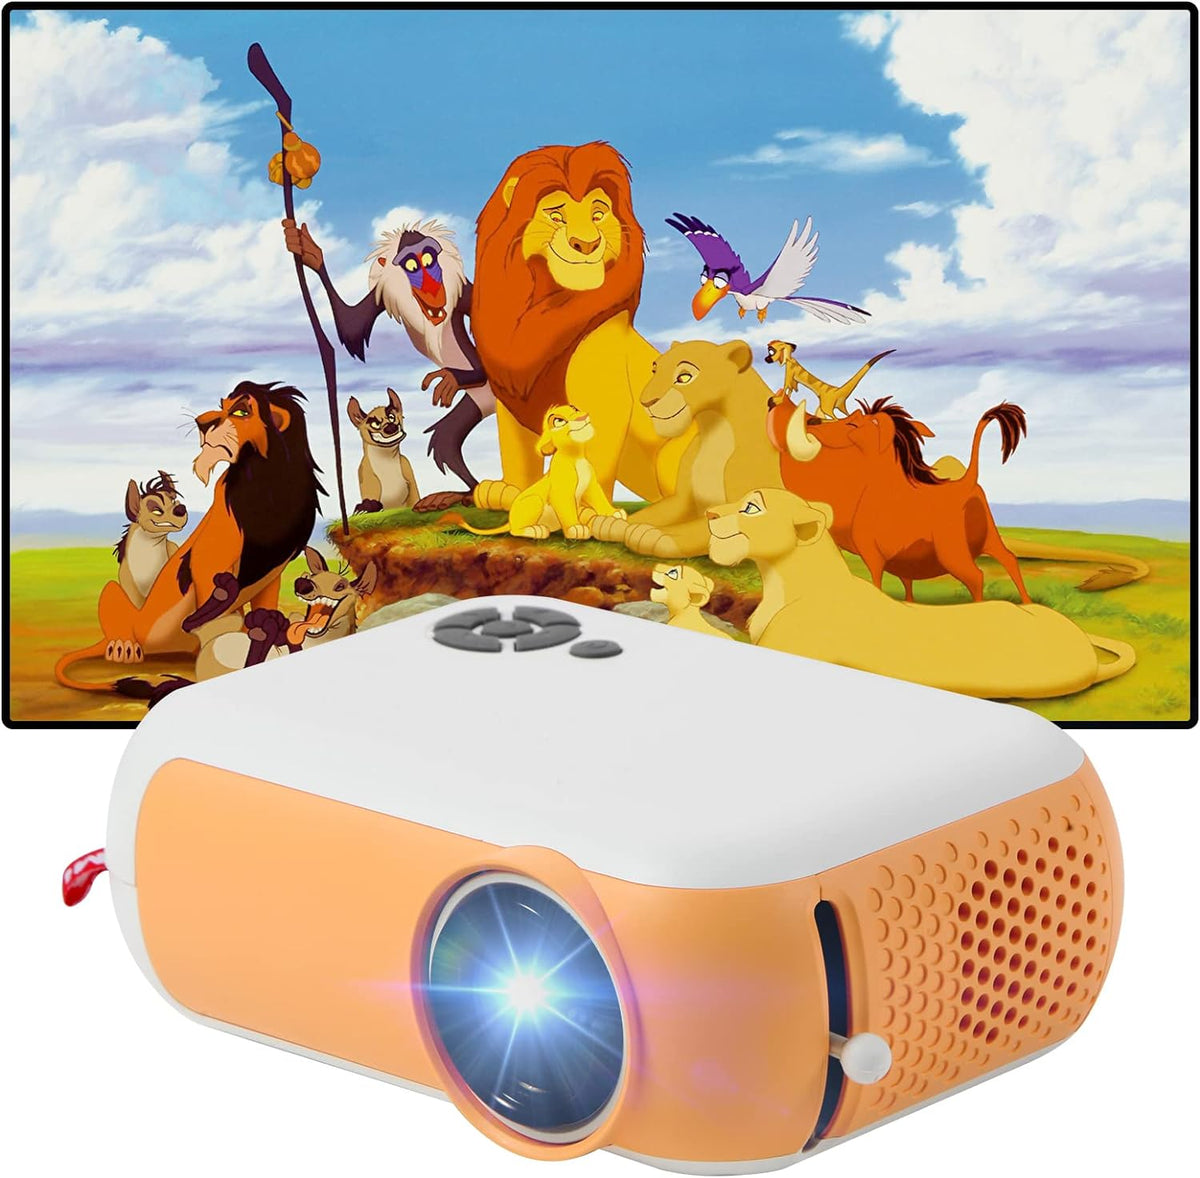 Videoproiector portabil, FULL HD, cu LED-uri, 1800 lumeni, mini proiector, 2000:1, Galben/Alb